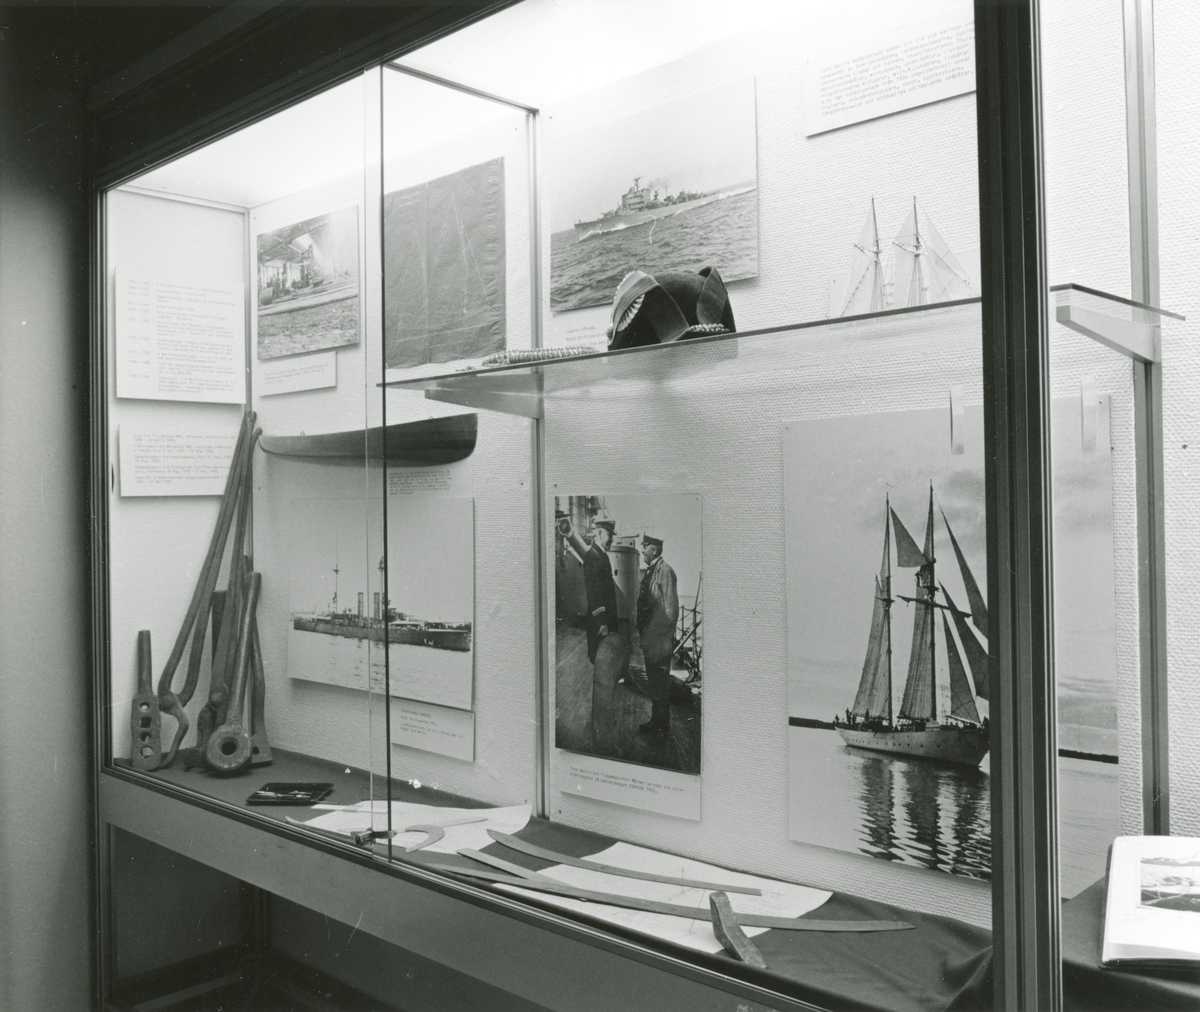 Utställningen "Tore Herlin" i trappmonter. Presentation av Tore Herlin med bl.a. fotografier, föremål och fartygsmodeller.